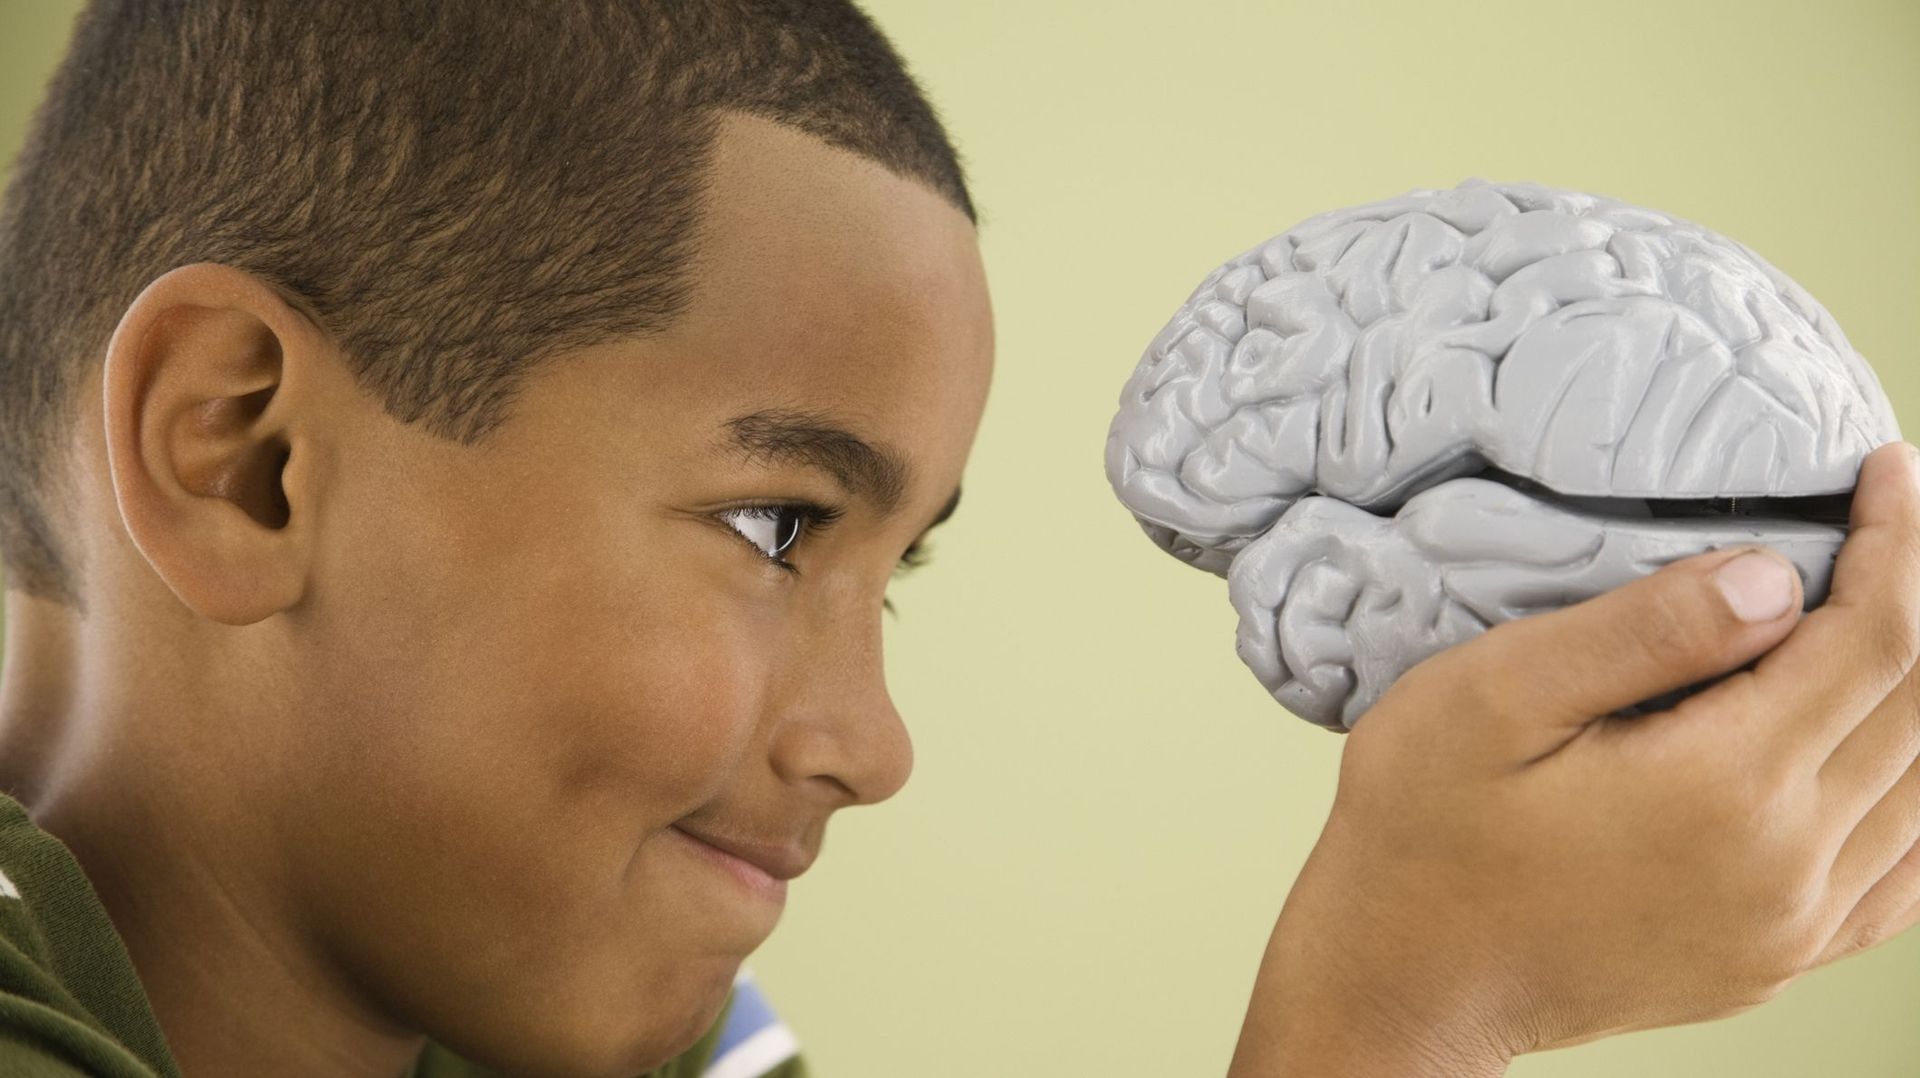 Perturbateurs endocriniens : une étude conclut à un impact sur le développement cérébral des enfants